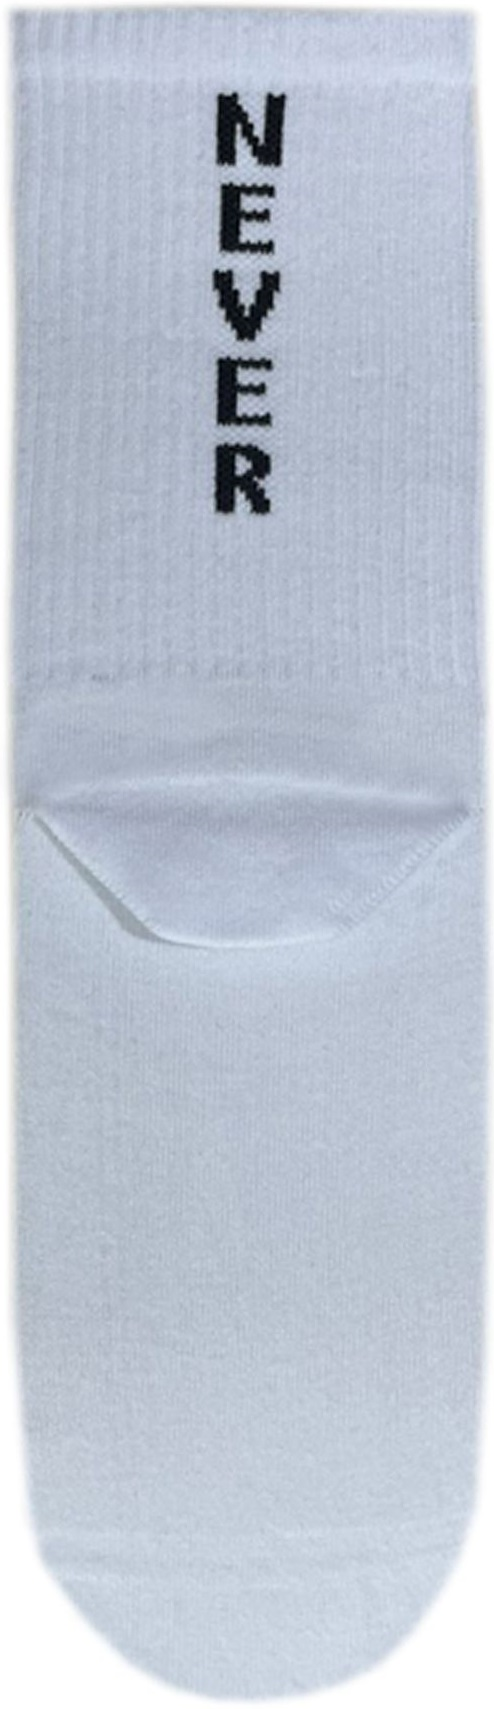 Носки мужские Premier Socks 42-43 1 пара белые с принтом (4820163317922) фото 2